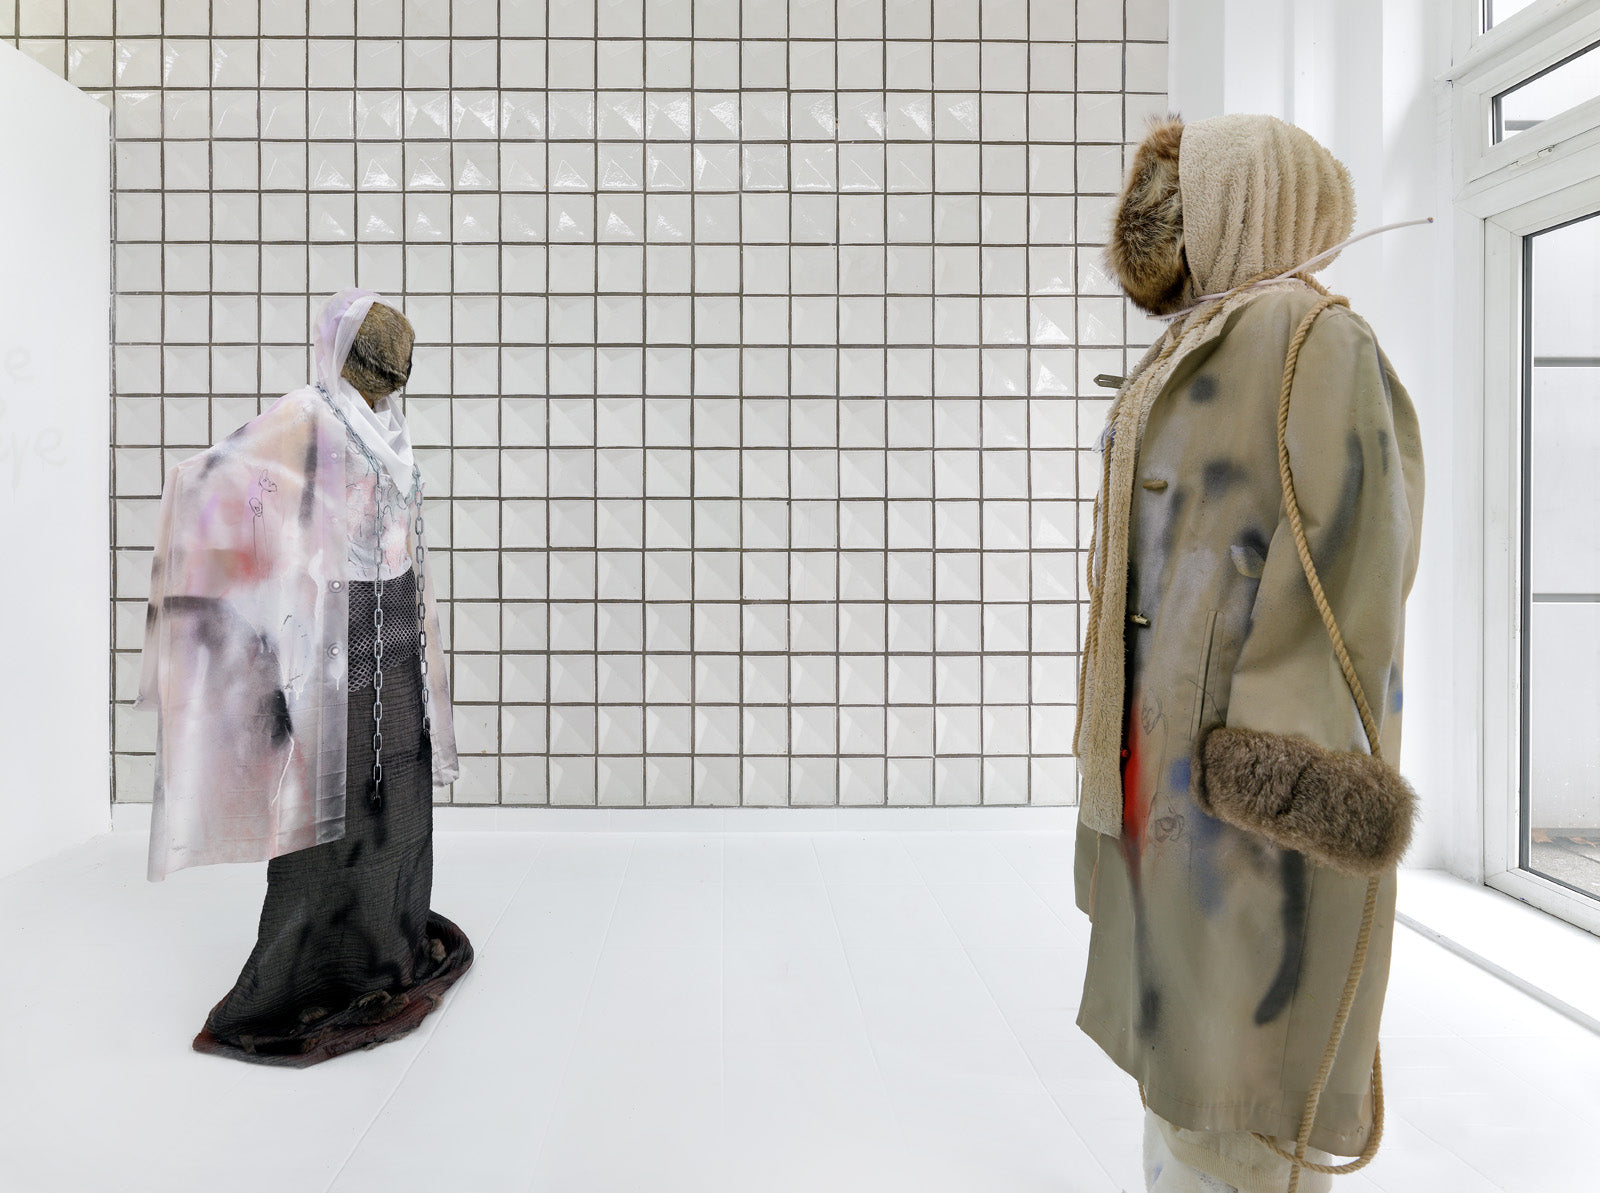 Isabella Fürnkäs, The Loop, Installation view, 2018/19, Italic Berlin